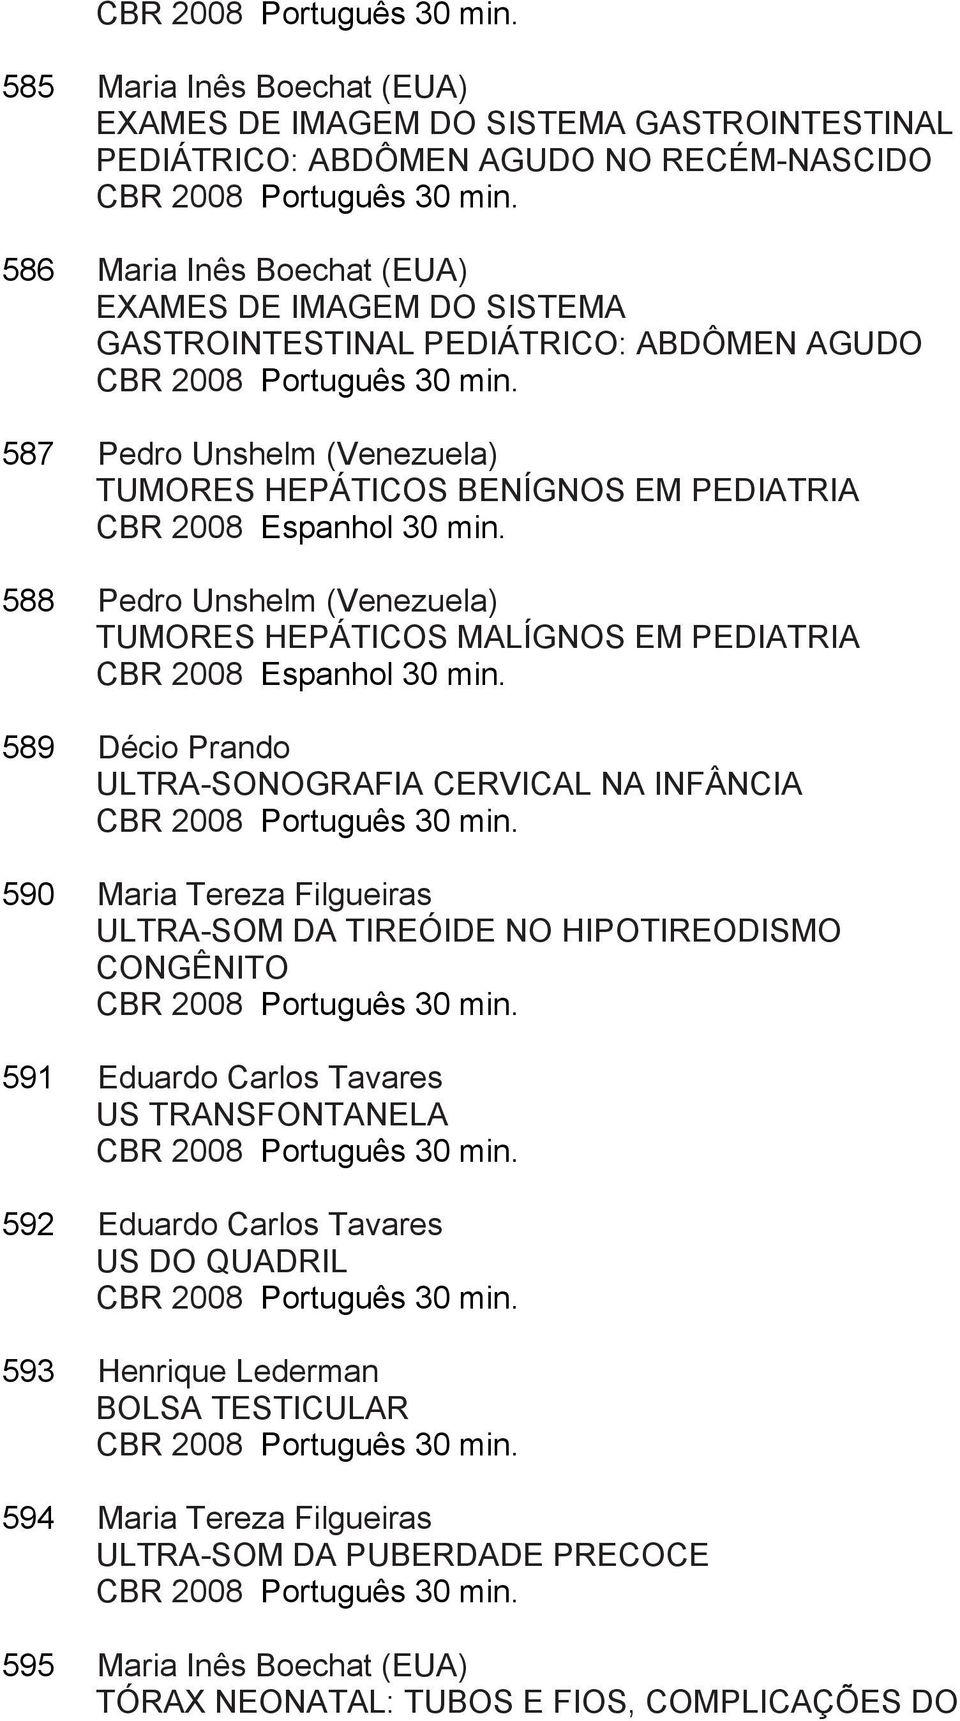 587 Pedro Unshelm (Venezuela) TUMORES HEPÁTICOS BENÍGNOS EM PEDIATRIA CBR 2008 Espanhol 30 min. 588 Pedro Unshelm (Venezuela) TUMORES HEPÁTICOS MALÍGNOS EM PEDIATRIA CBR 2008 Espanhol 30 min.